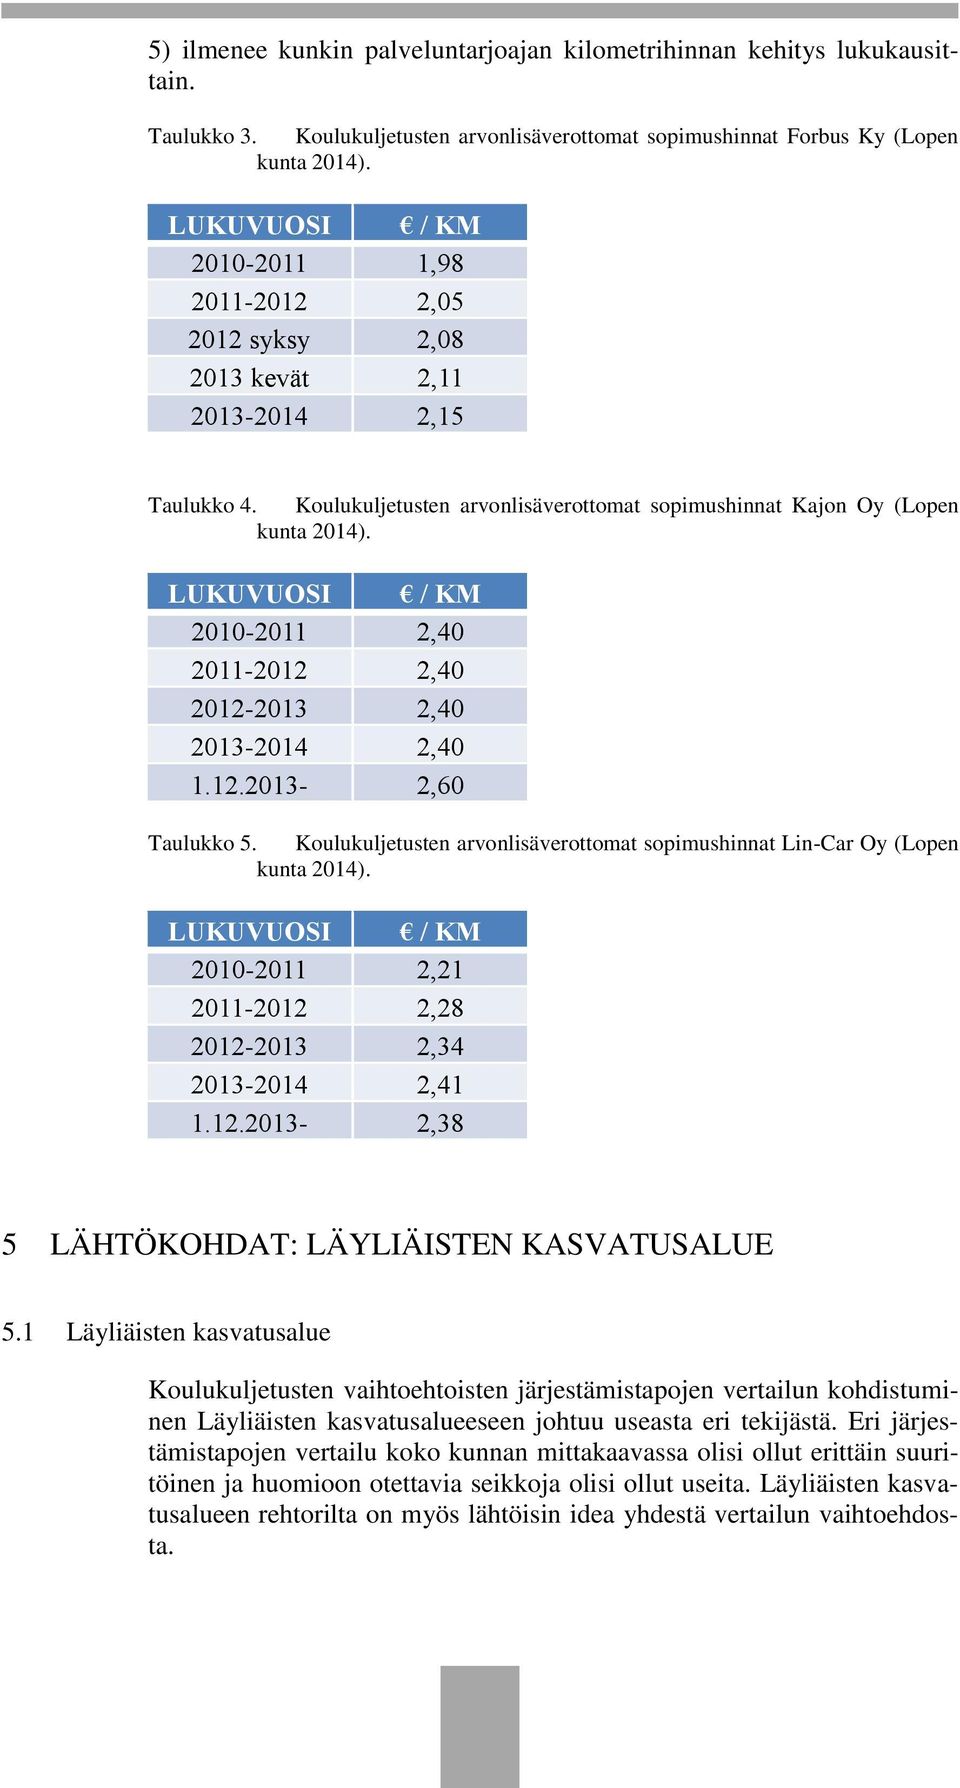 LUKUVUOSI / KM 2010-2011 2,40 2011-2012 2,40 2012-2013 2,40 2013-2014 2,40 1.12.2013-2,60 Taulukko 5. Koulukuljetusten arvonlisäverottomat sopimushinnat Lin-Car Oy (Lopen kunta 2014).